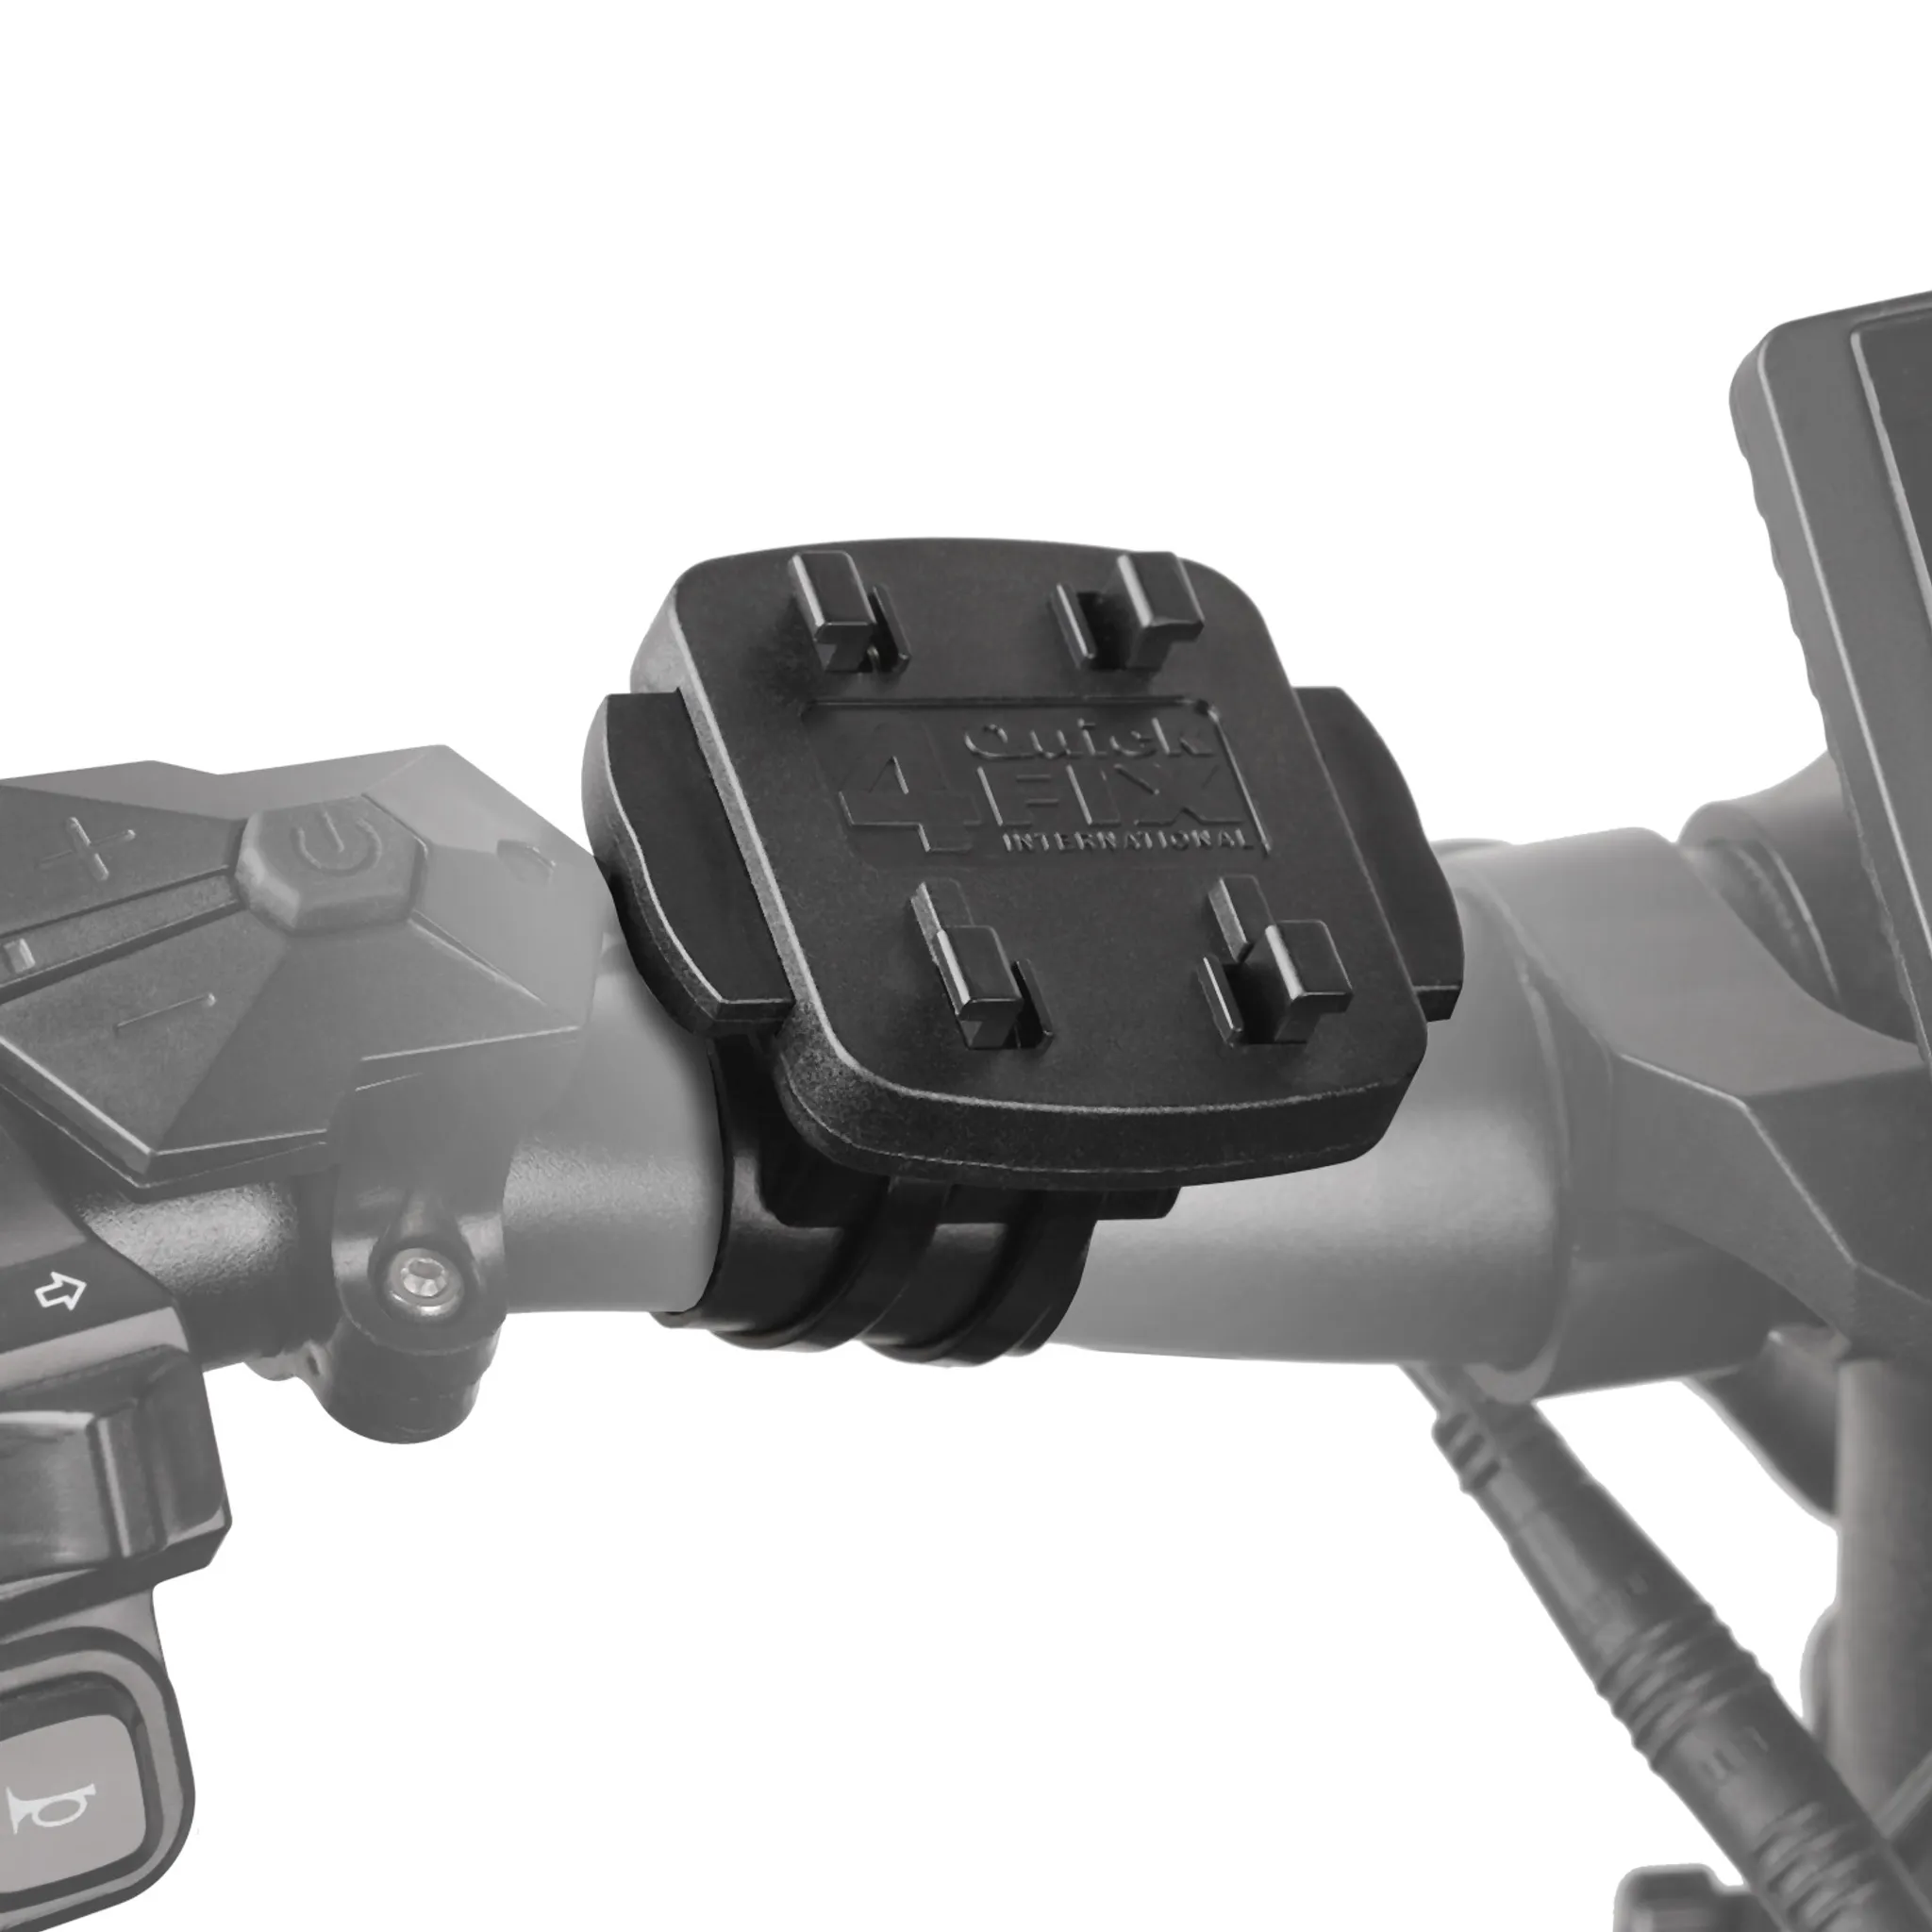 WICKED CHILI QuickMOUNT Fahrradhalterung / Motorradhalterung Set für Apple iPhone  11 (6,1 Zoll) Fahrrad / Motorrad Handy Halterung, schwarz